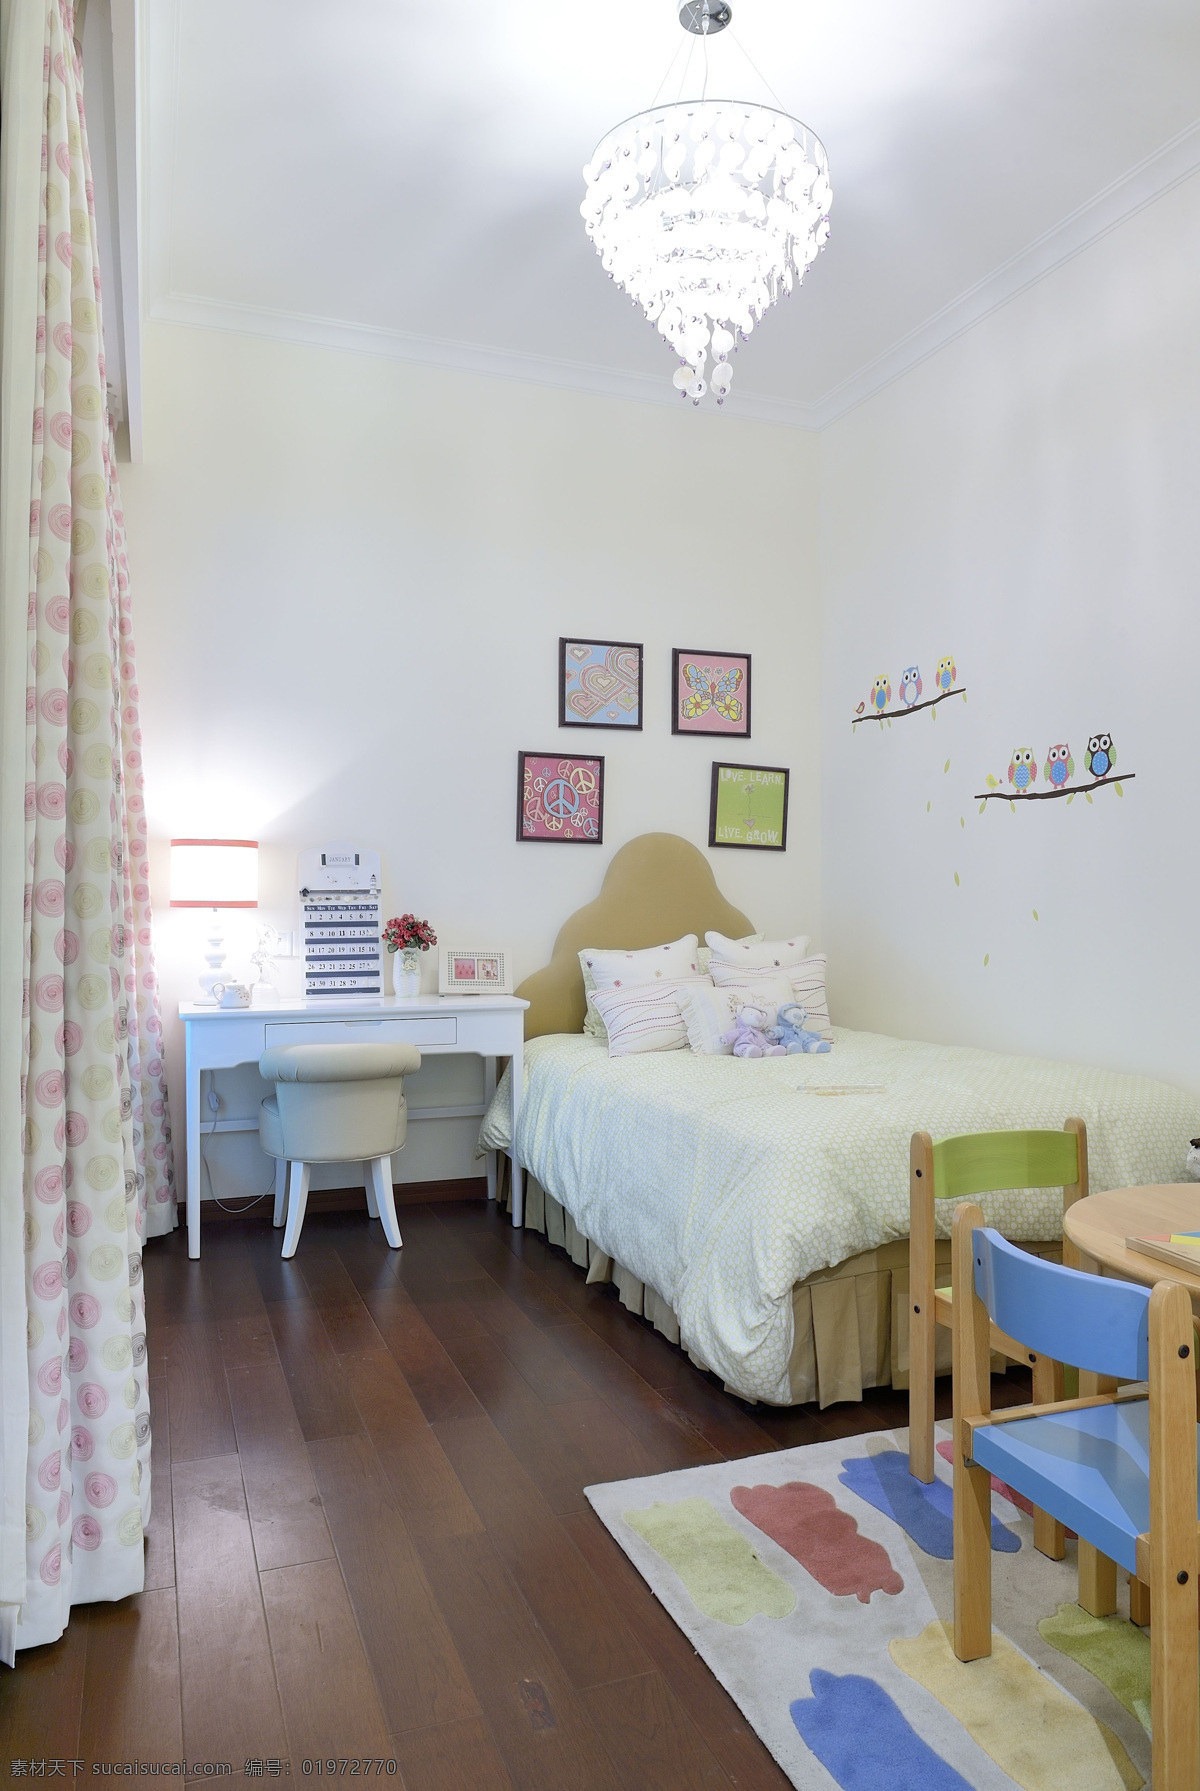 儿童 卧室 设计图 家居 家居生活 室内设计 装修 室内 家具 装修设计 环境设计 白色